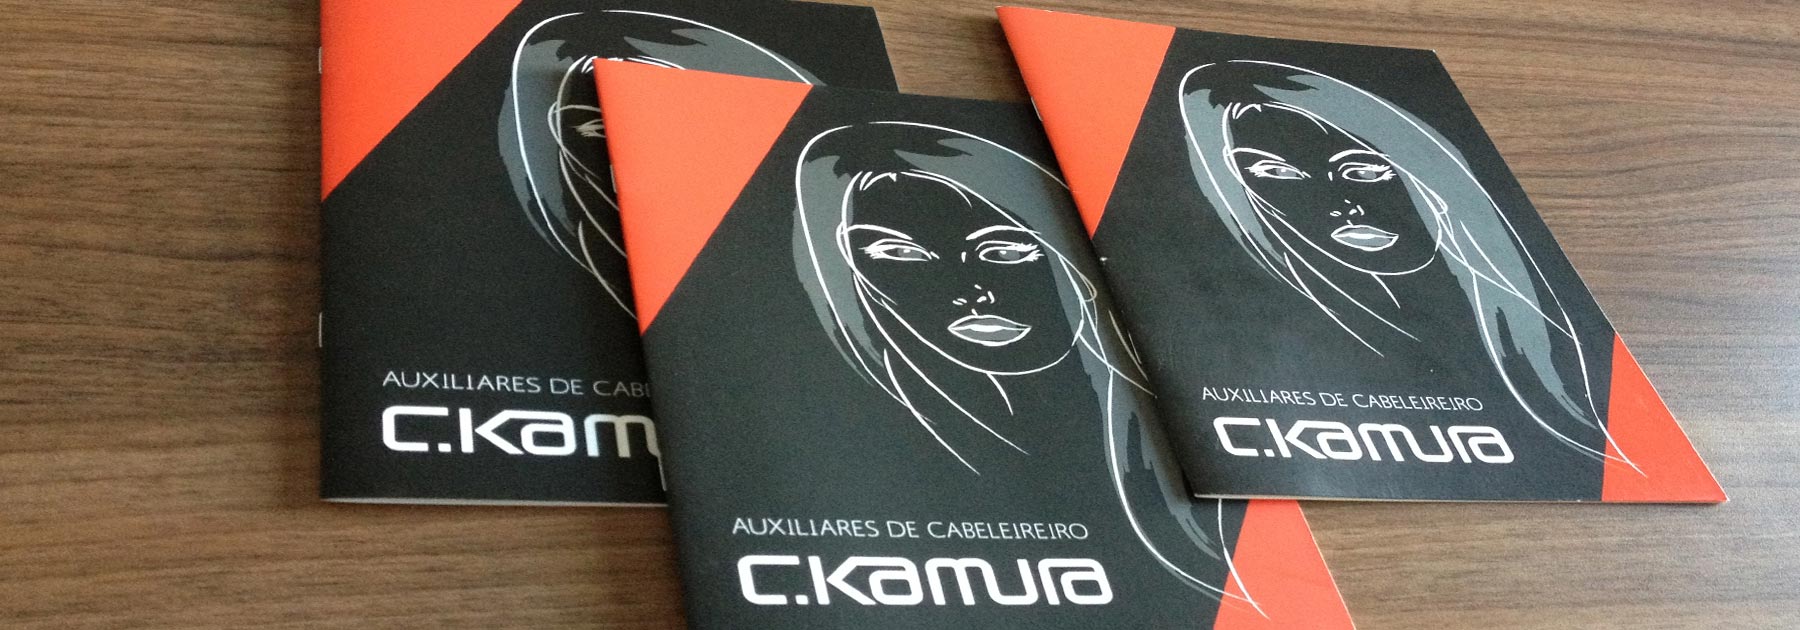 CKamura_Auxiliares1